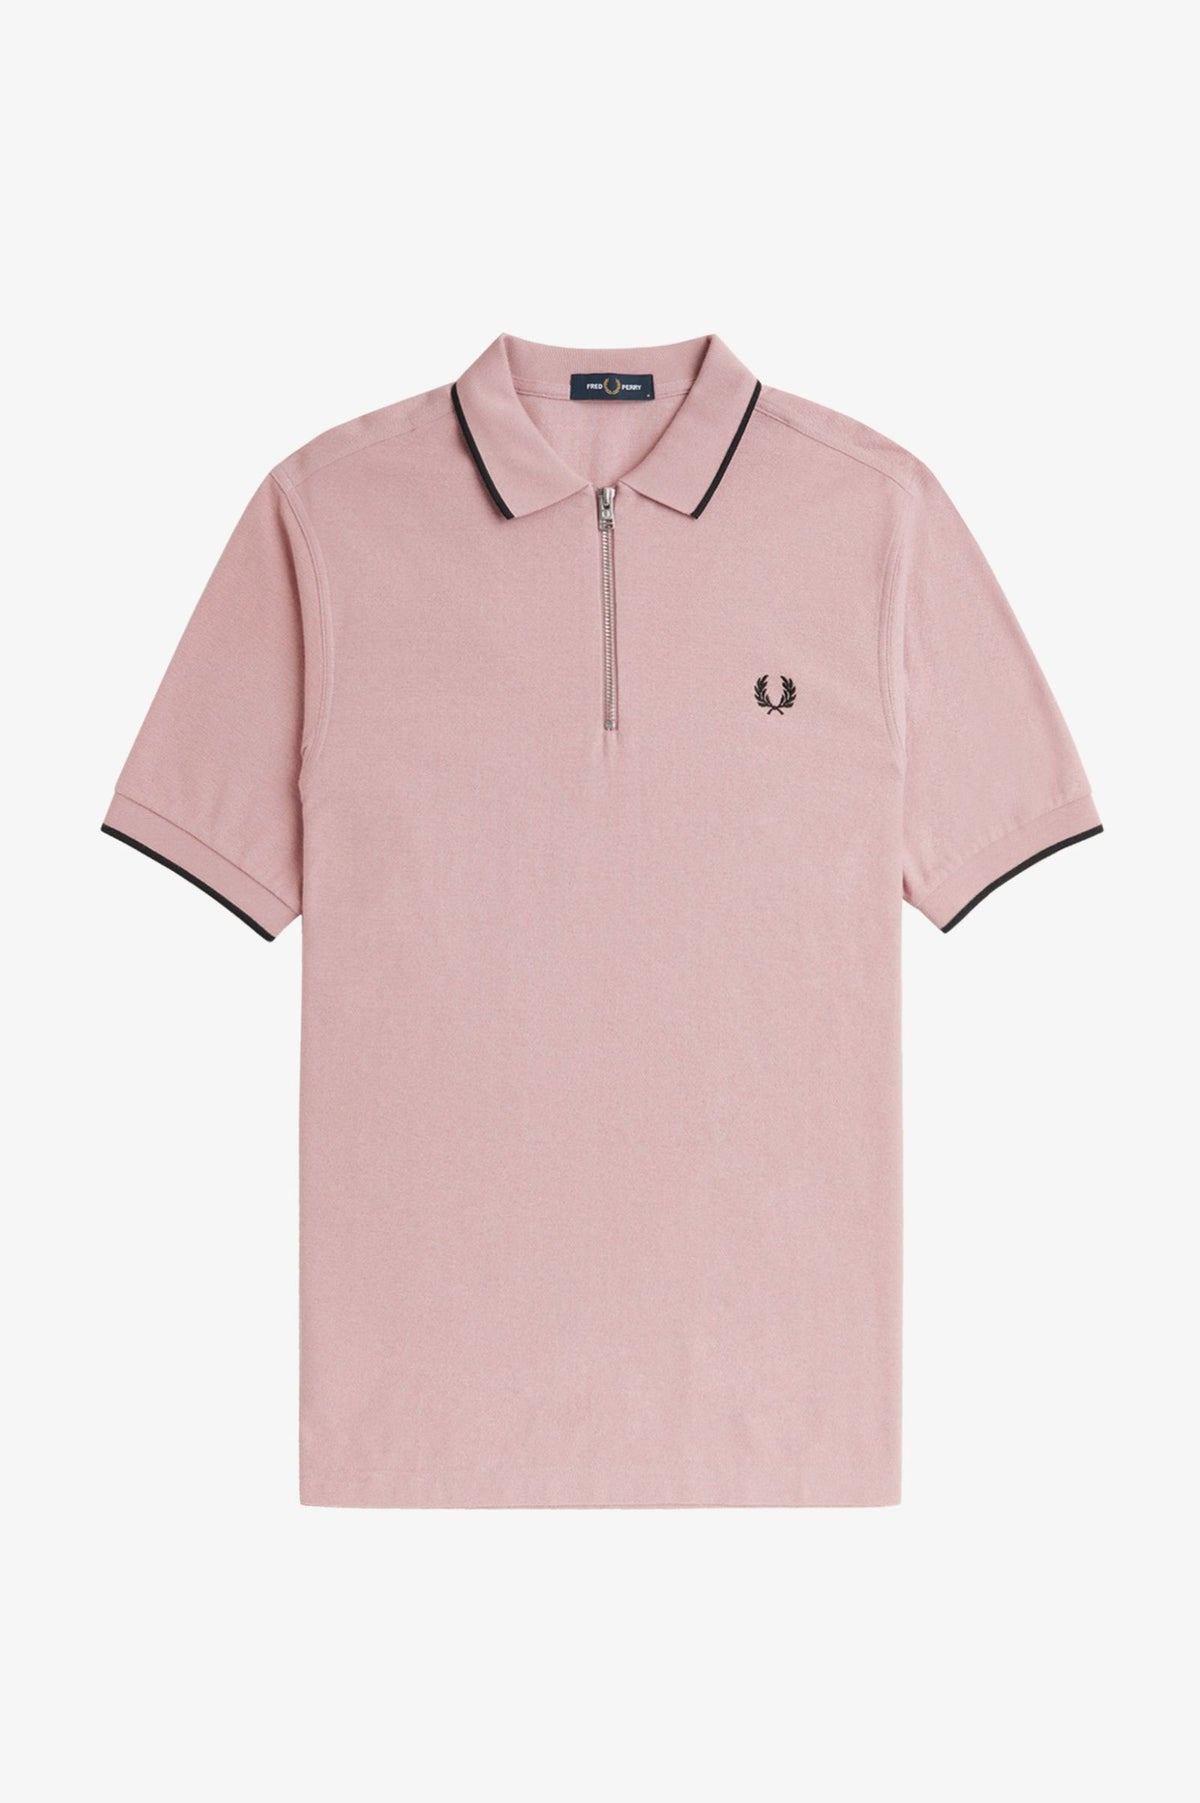 Crepe Piqué Zip Neck Polo Shirt - Pink